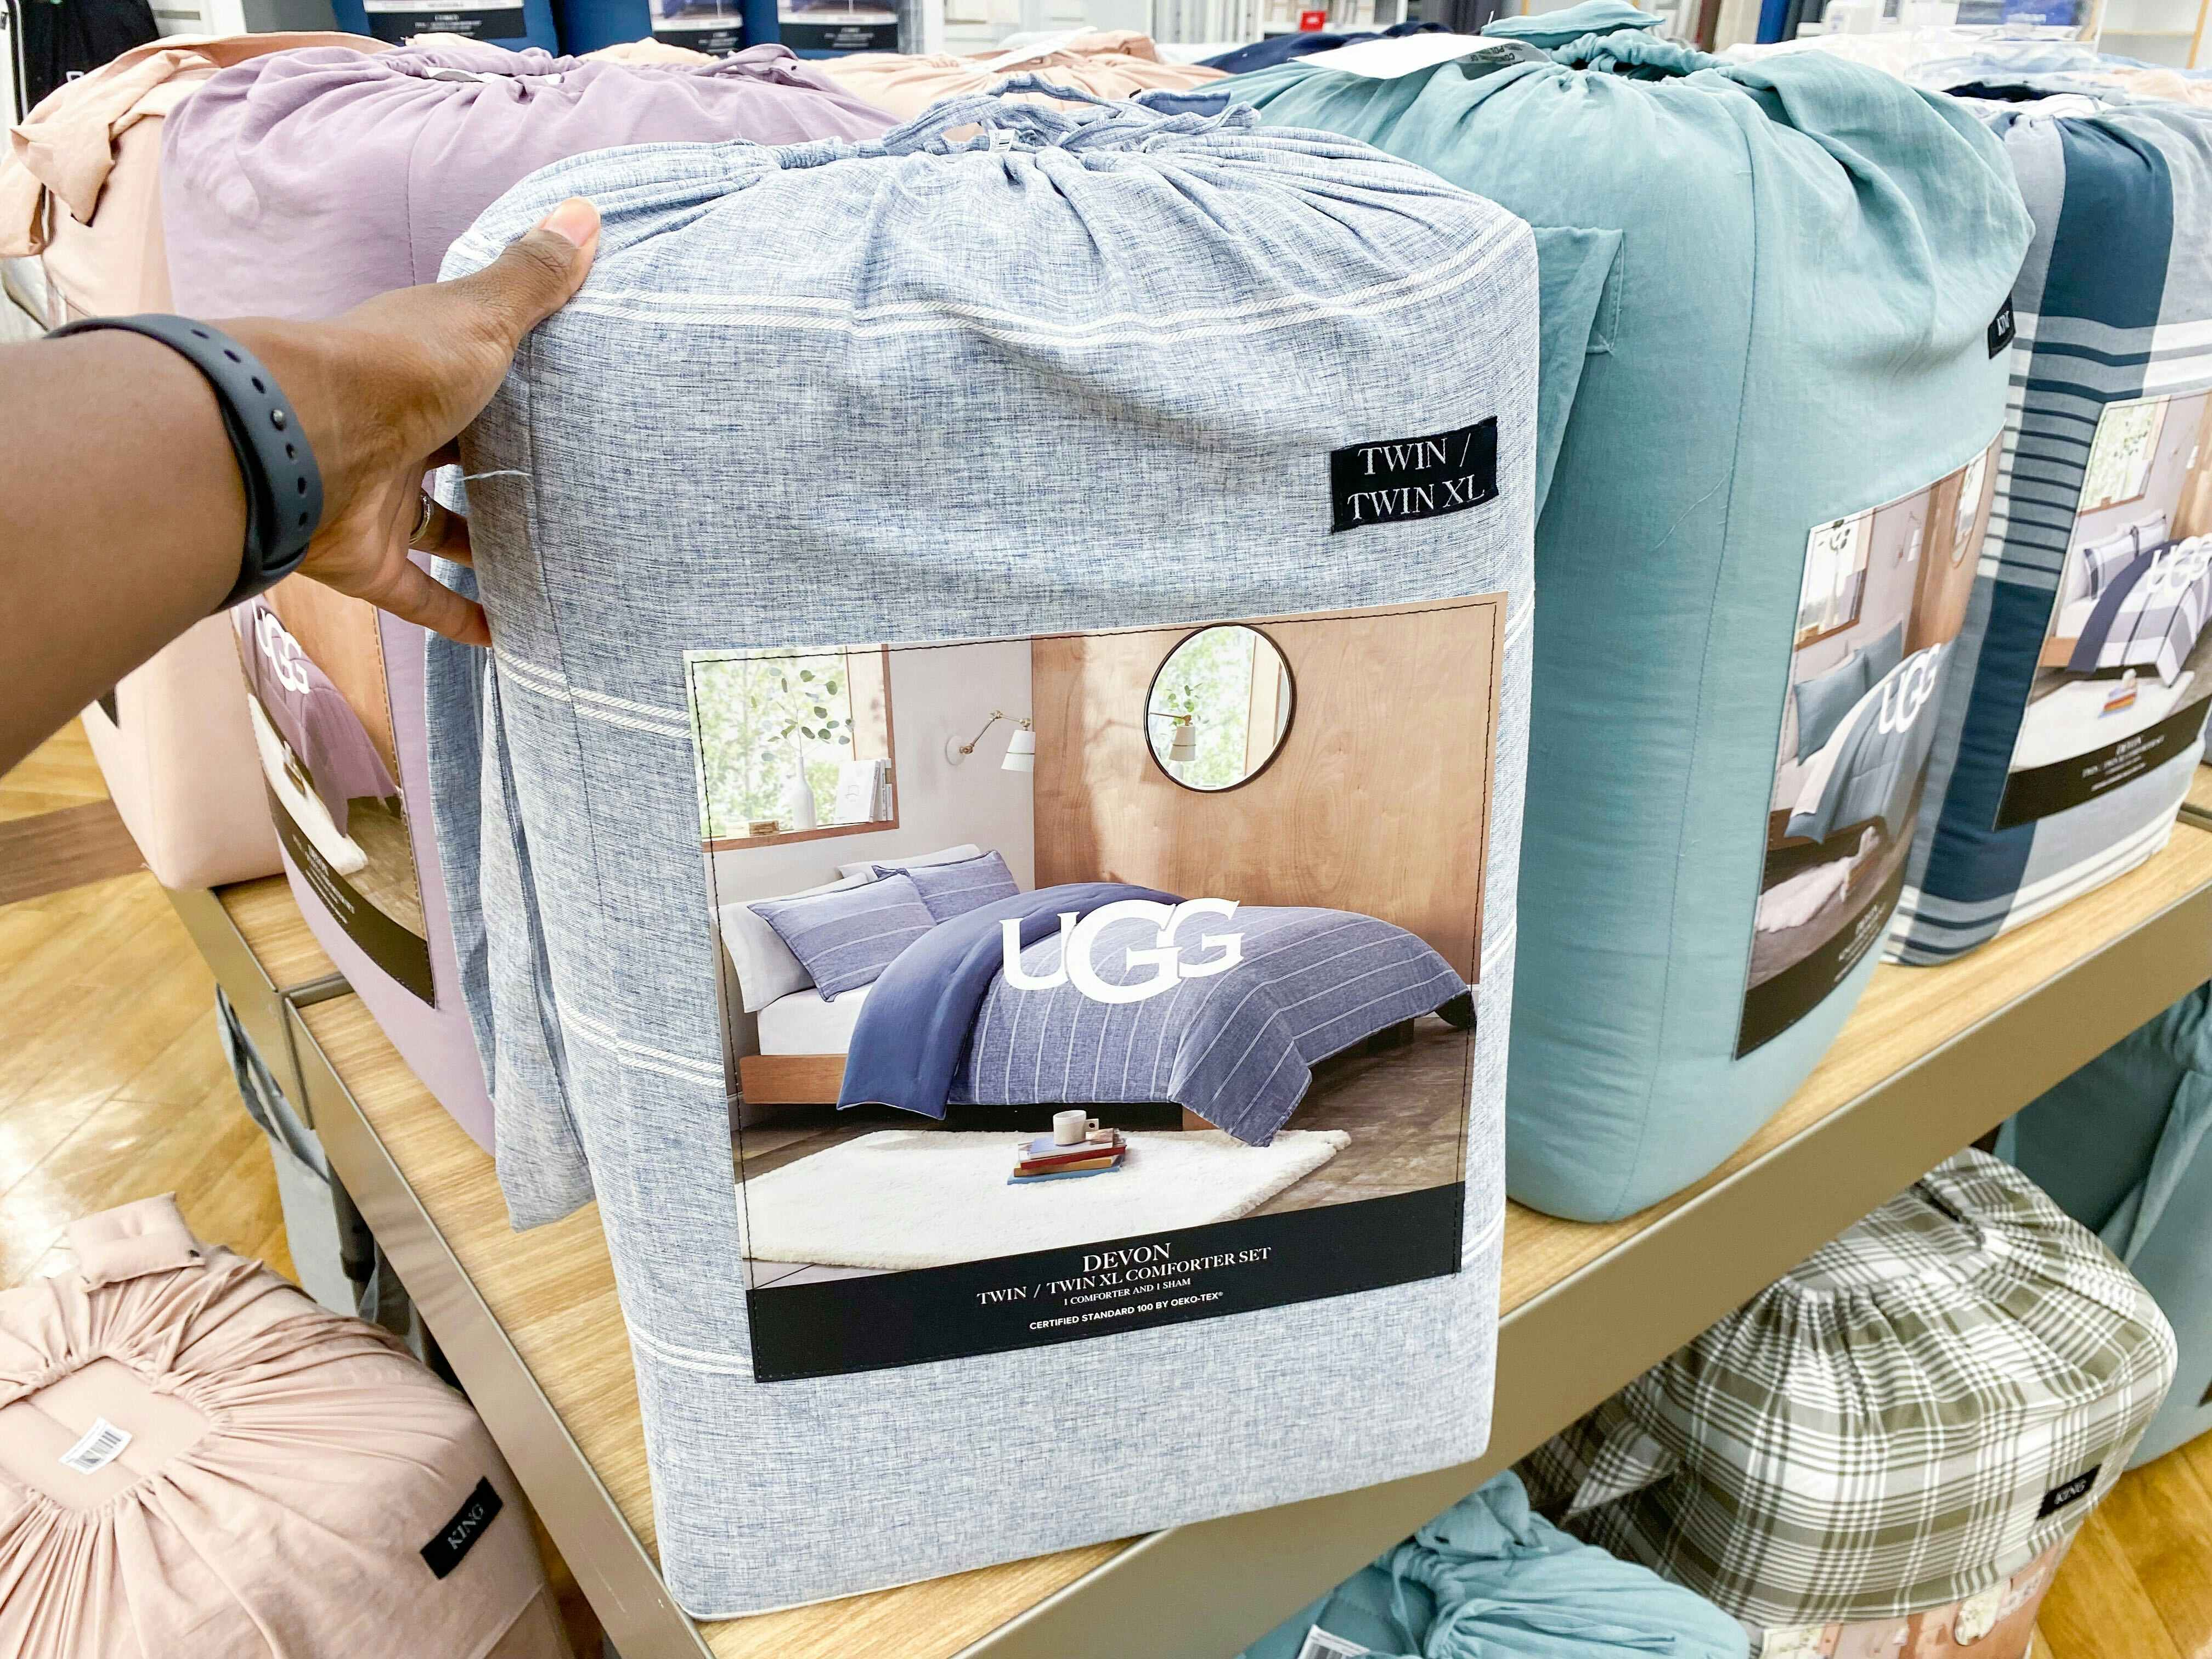 UGG comforter sets on a shelf